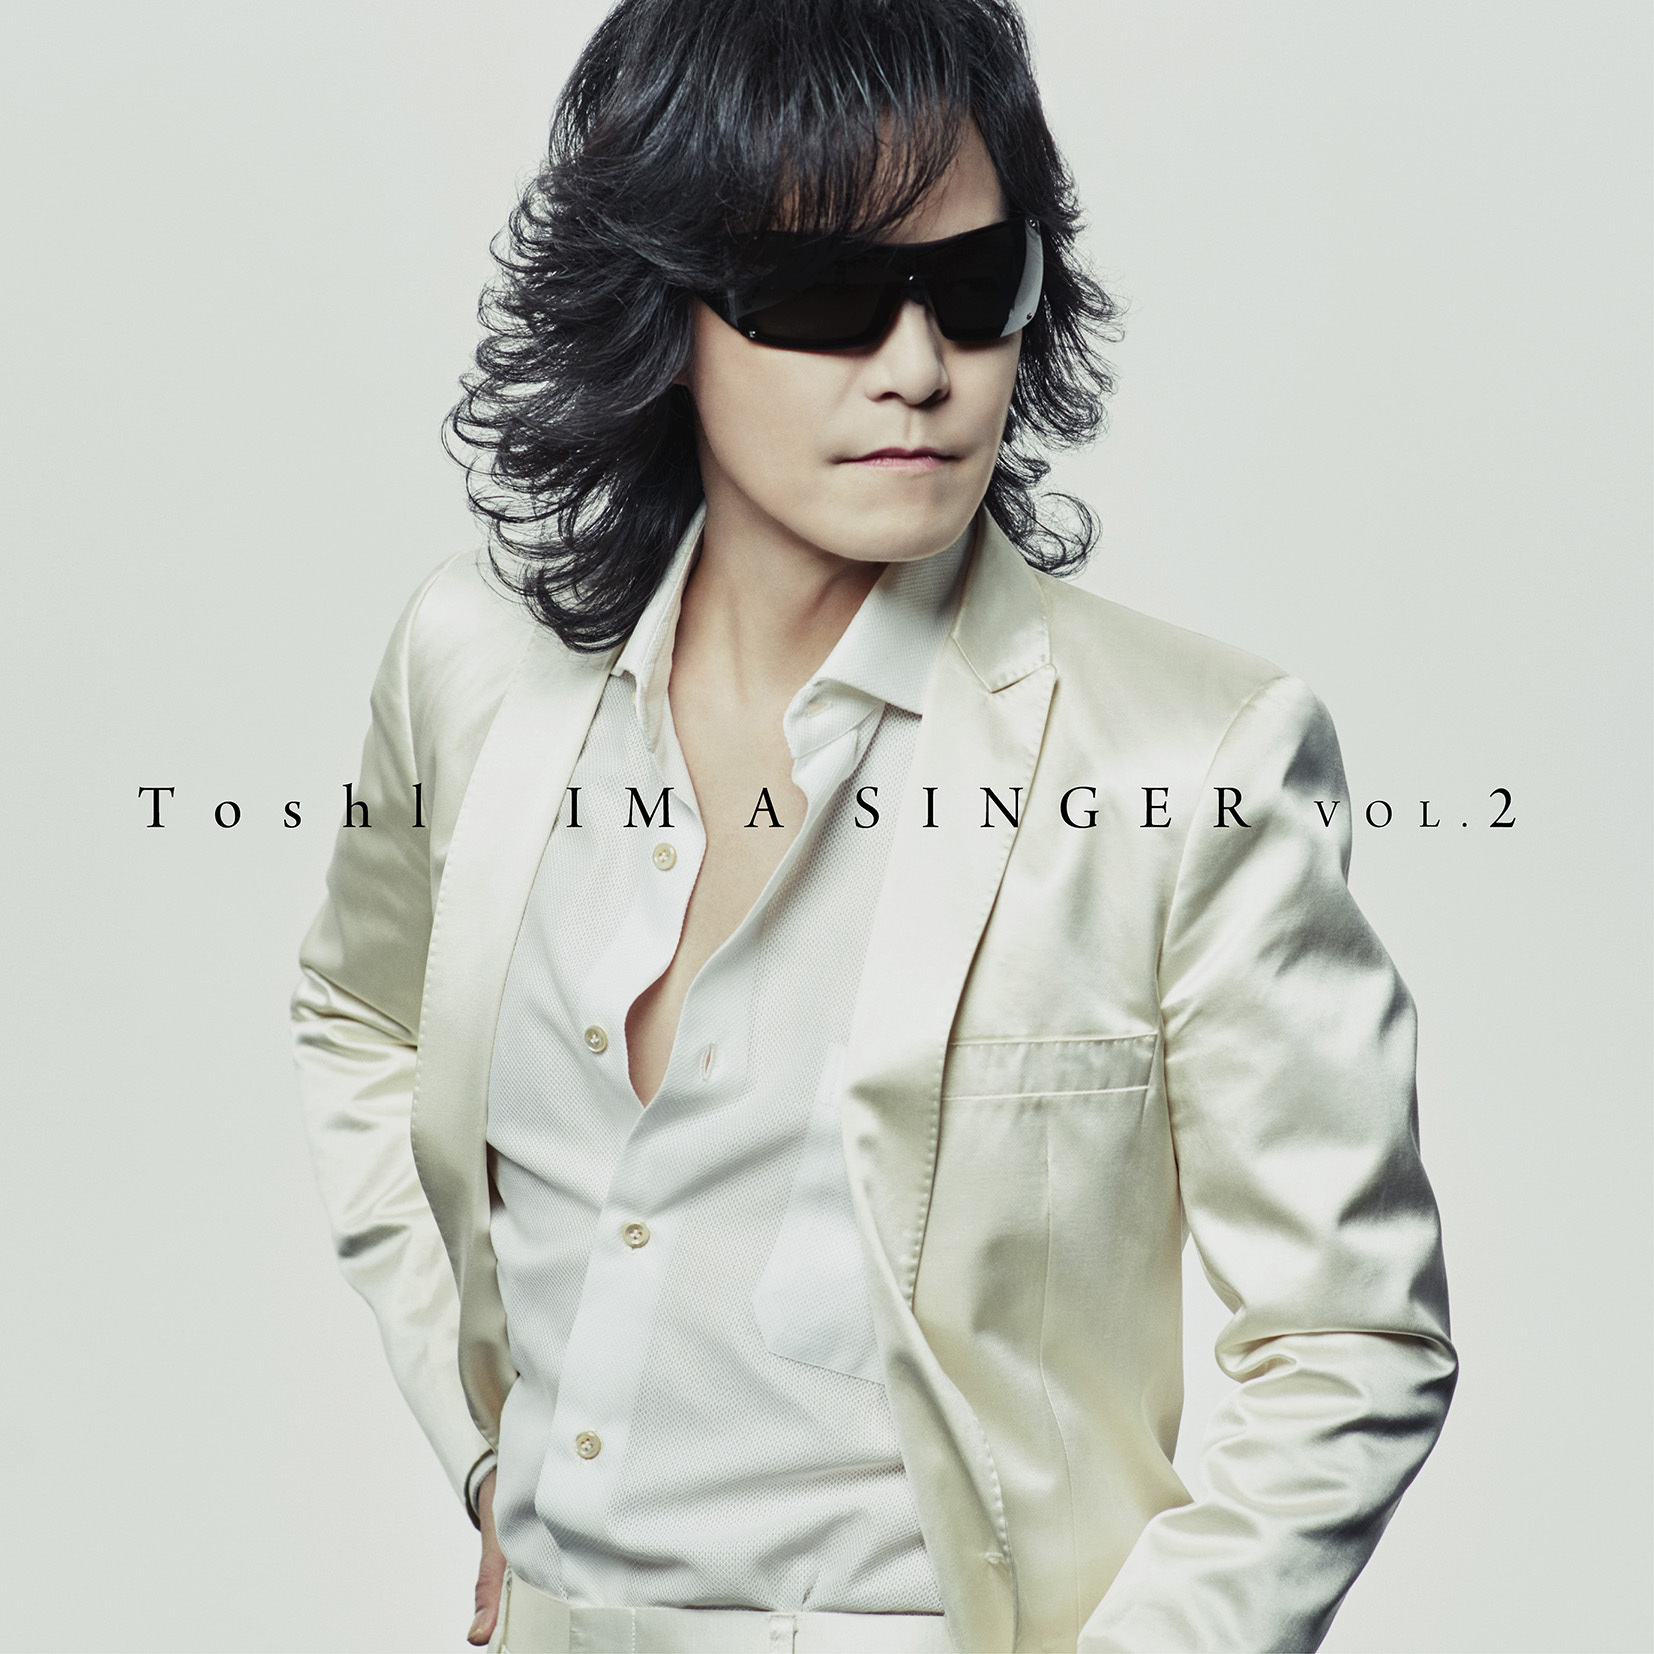 Toshi 大ヒット カバーアルバムの第二弾 Im A Singer Vol 2 の発売が決定 Spice エンタメ特化型情報メディア スパイス